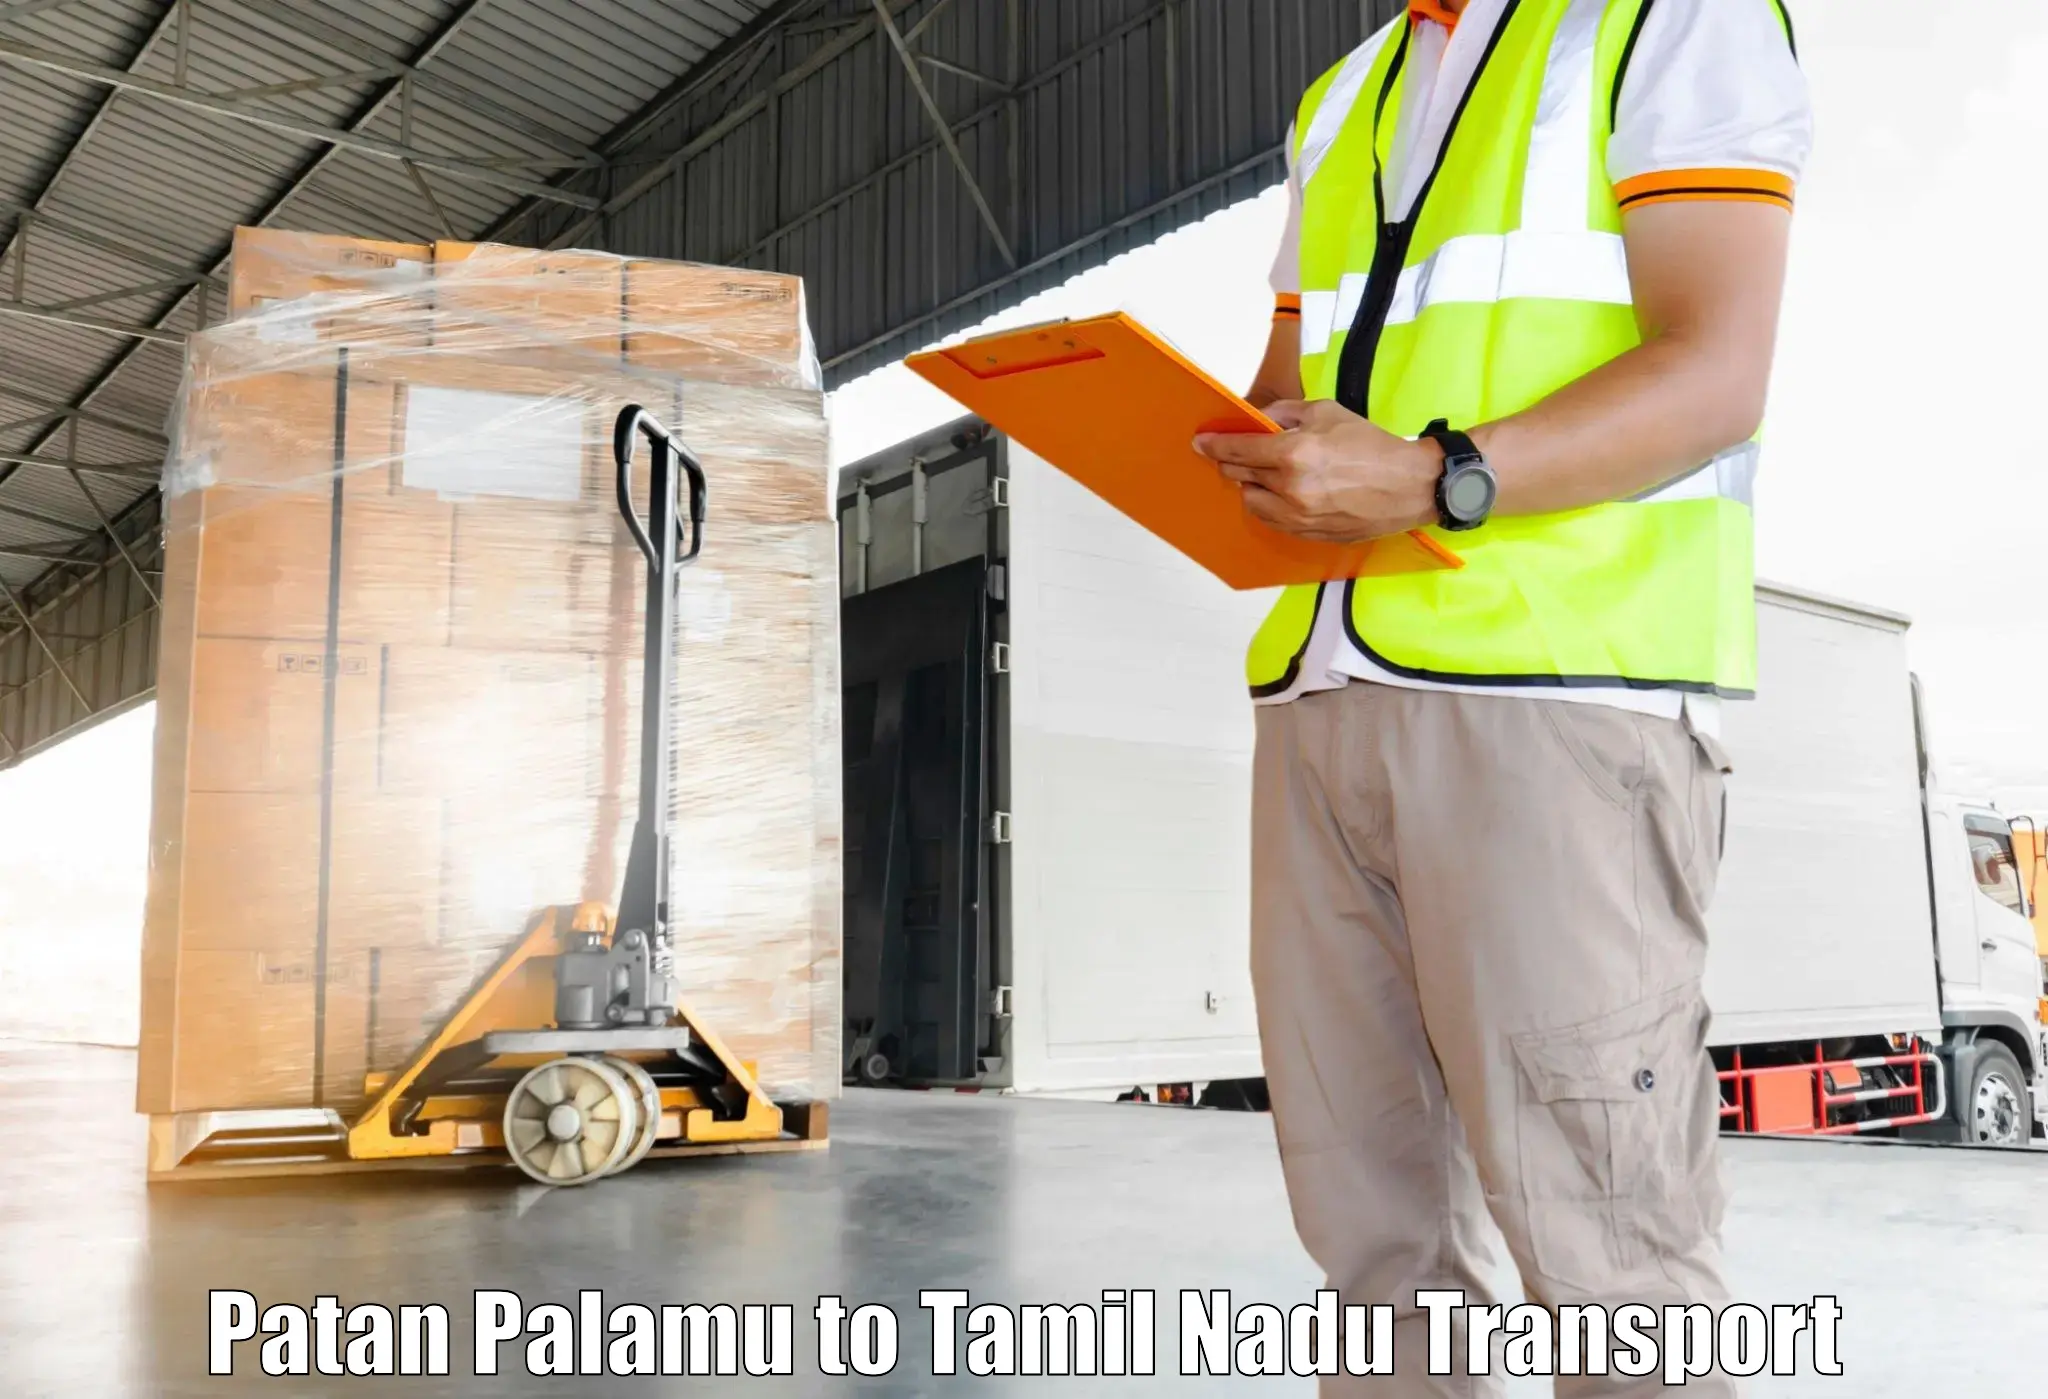 Shipping services Patan Palamu to Nandambakkam